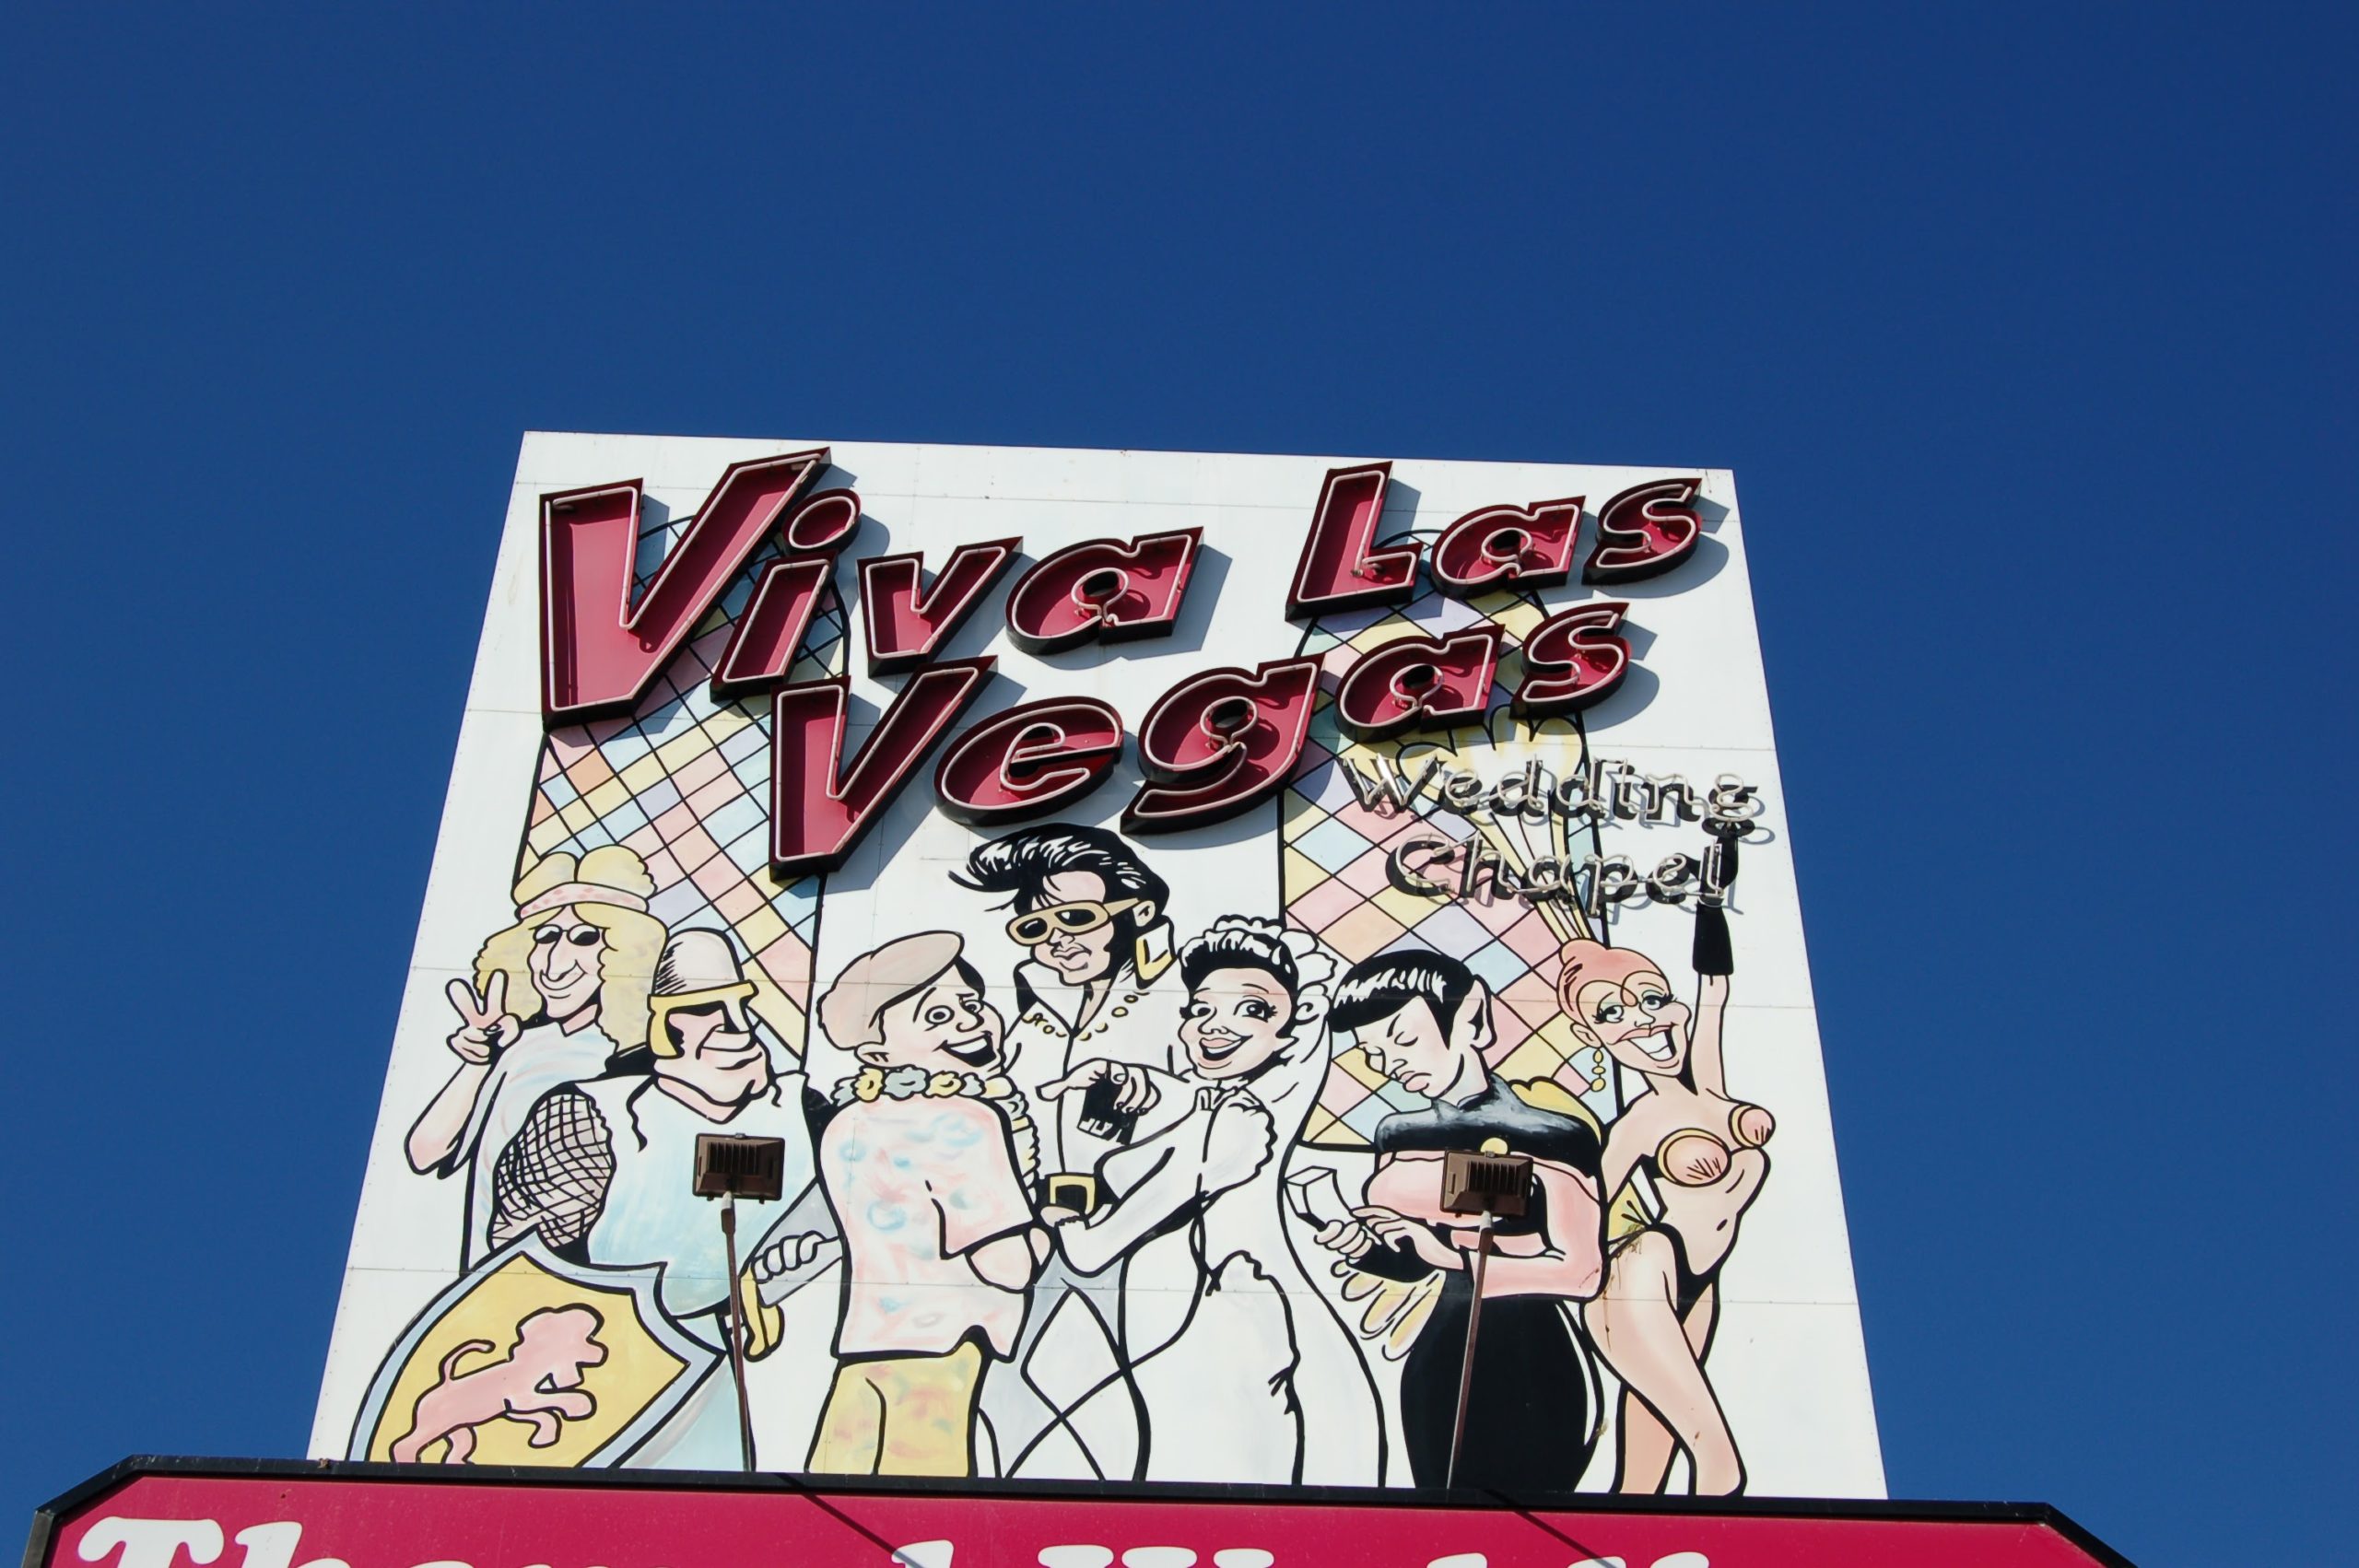 Viva Las Vegas Wedding Chapel, Las Vegas